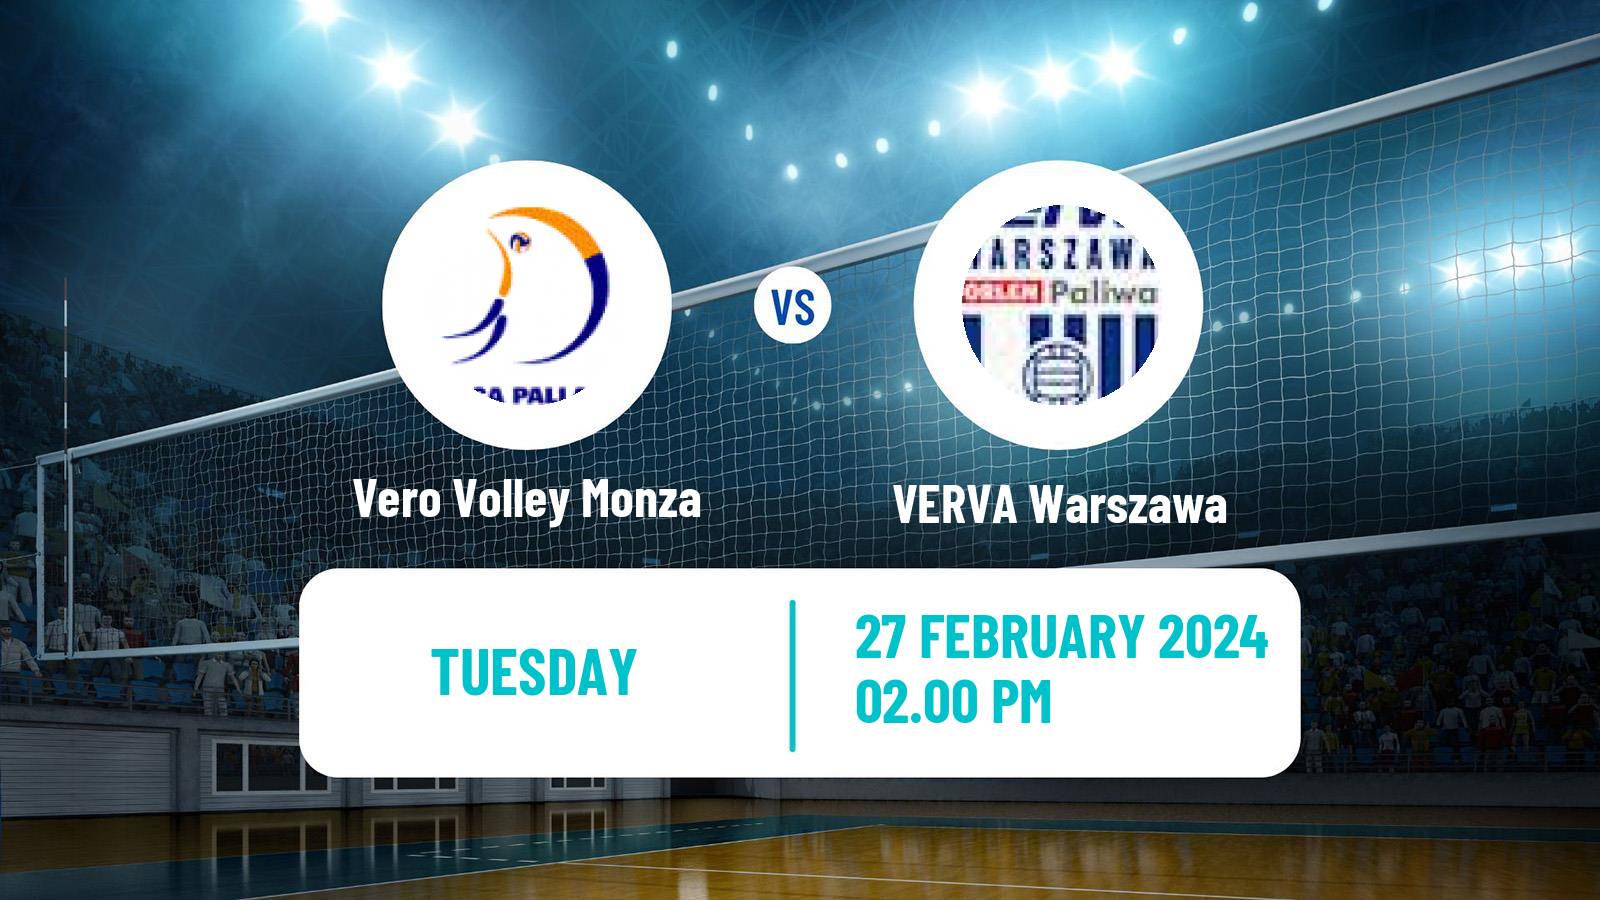 Volleyball CEV Challenge Cup Vero Volley Monza - VERVA Warszawa